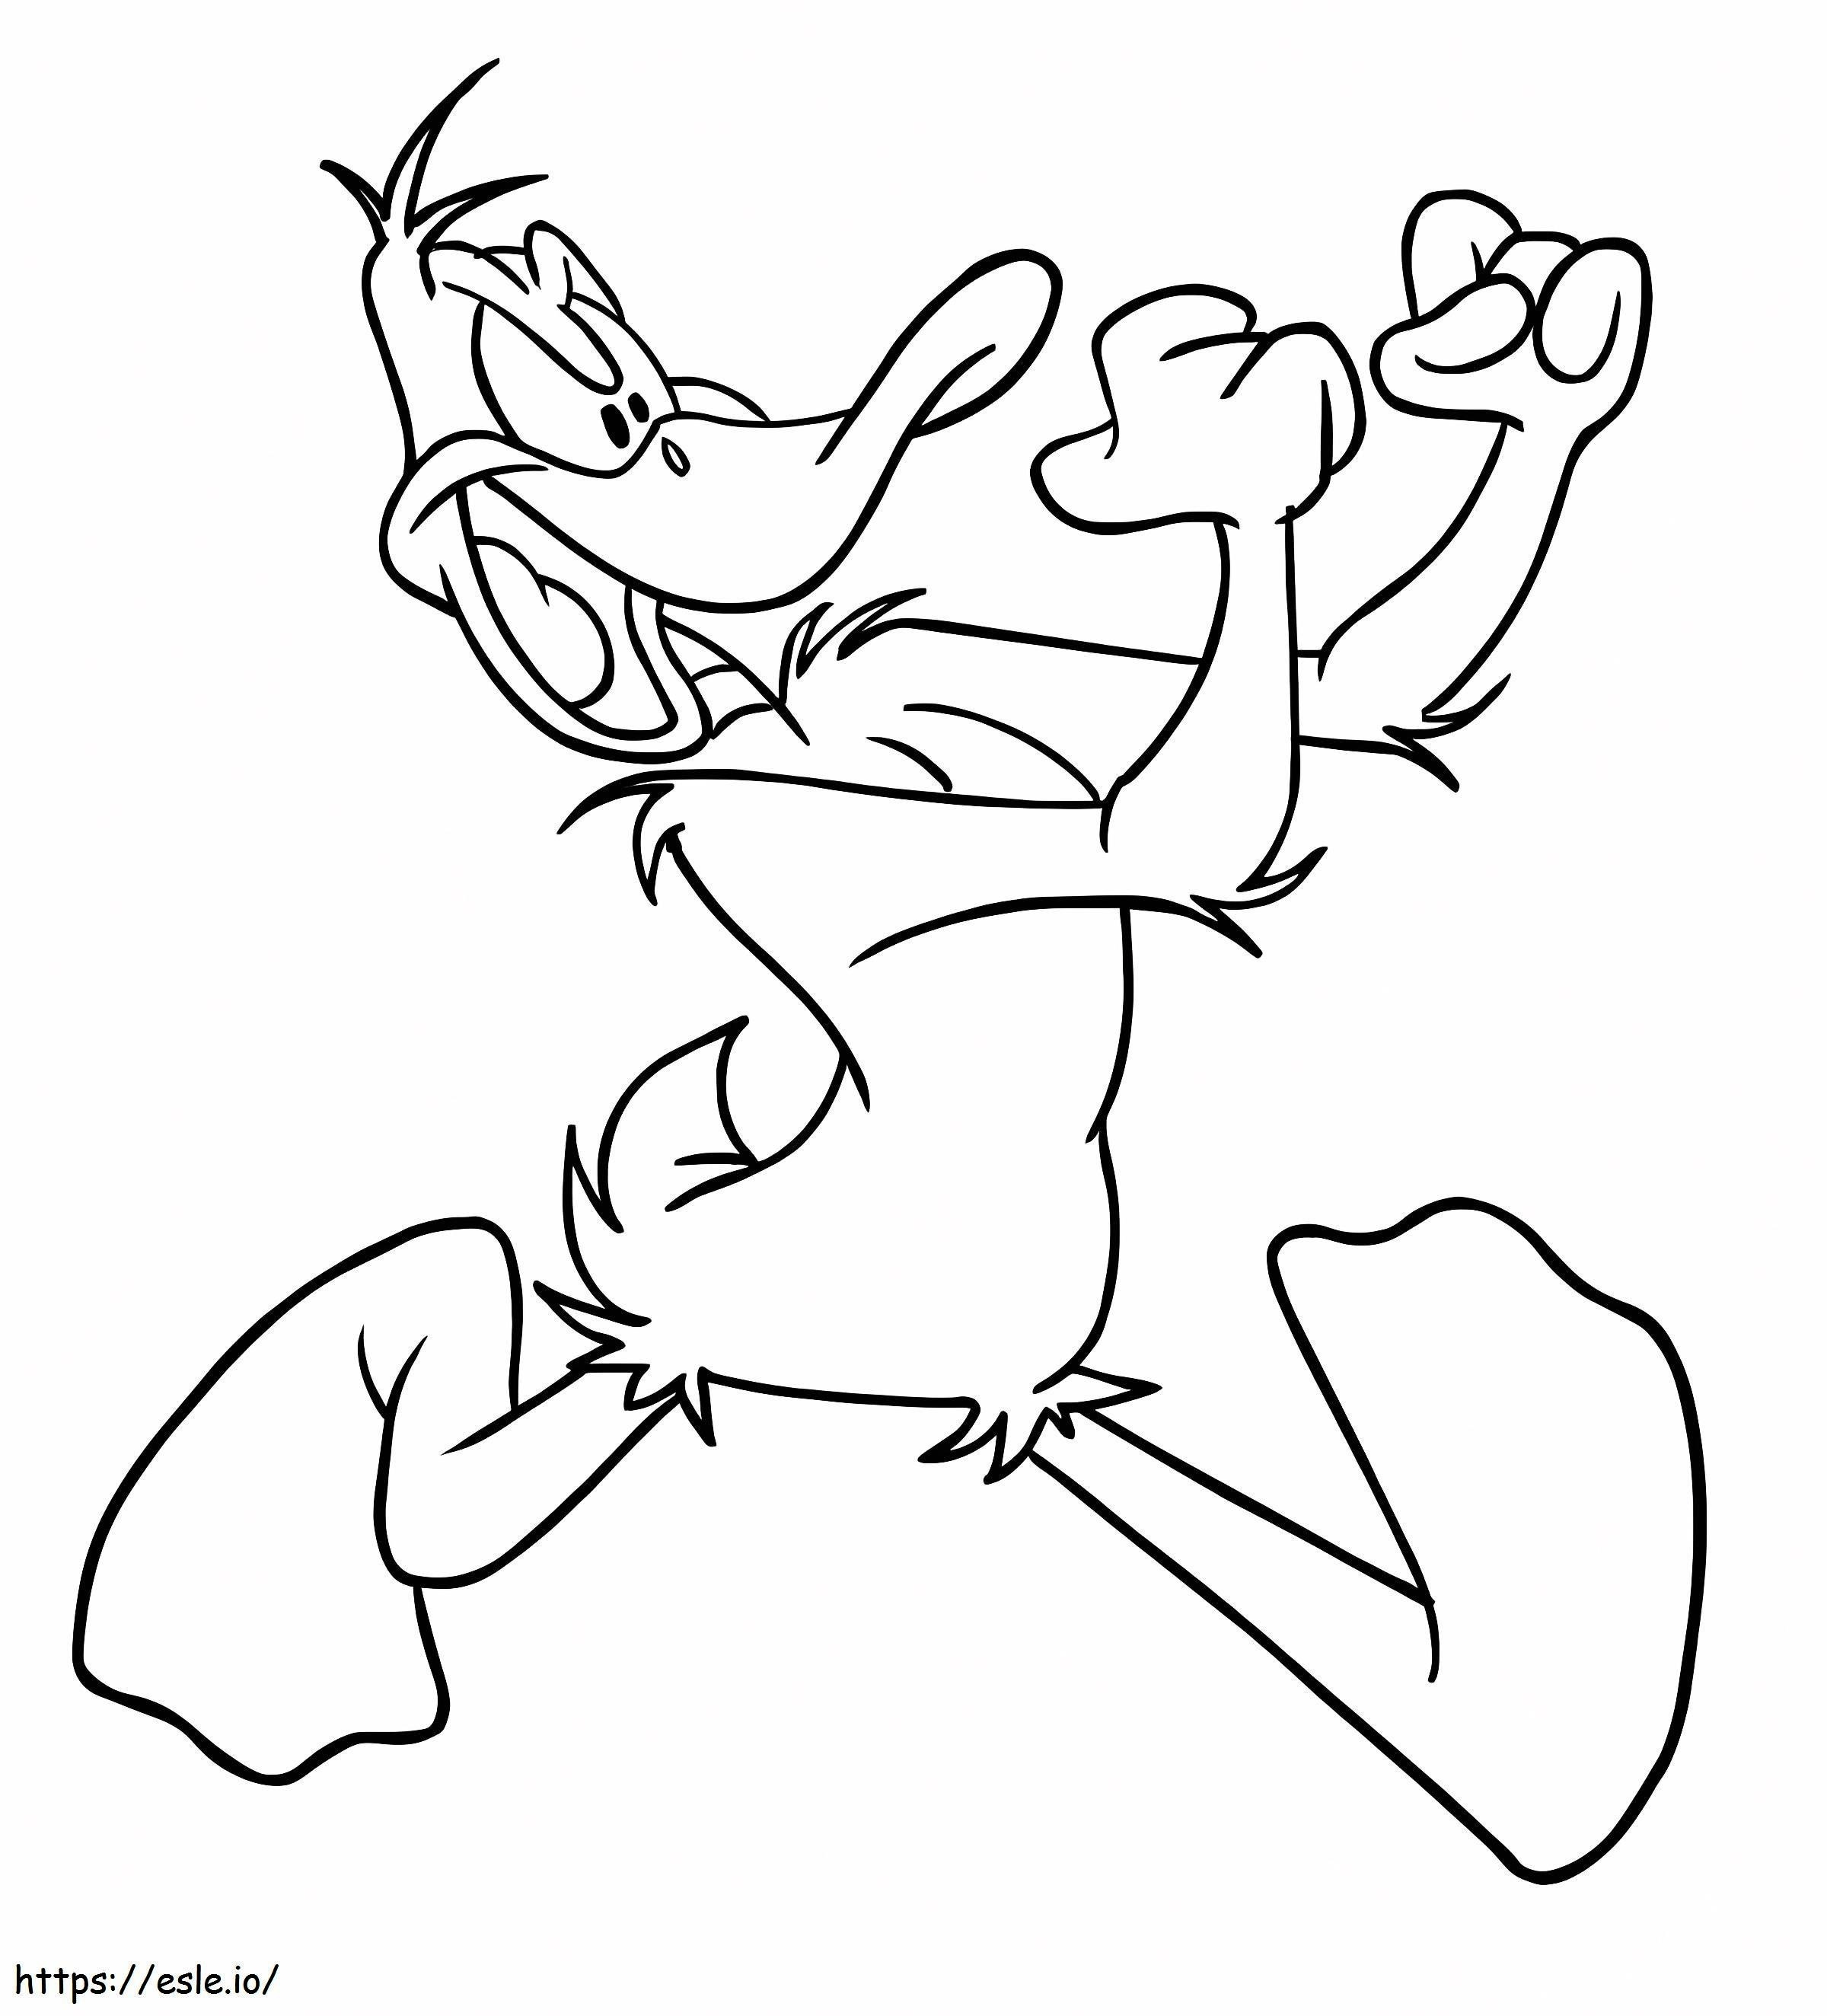 Daffy Duck Fight kifestő